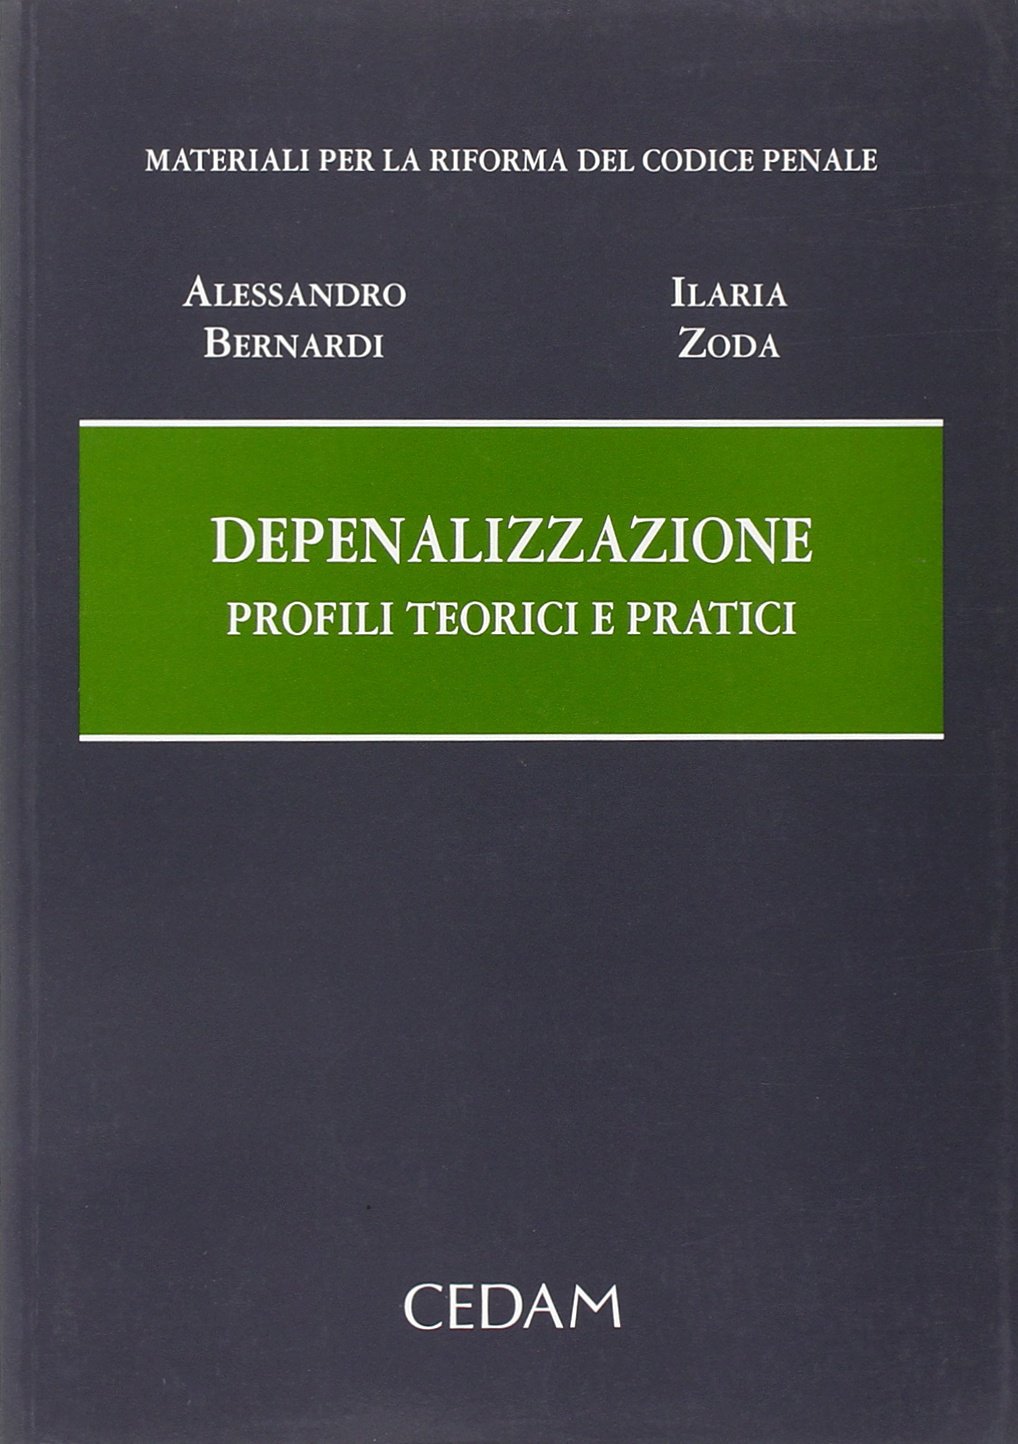 Libri Alessandro Bernardi / Ilaria Zoda - Depenalizzazione NUOVO SIGILLATO, EDIZIONE DEL 01/06/2008 SUBITO DISPONIBILE